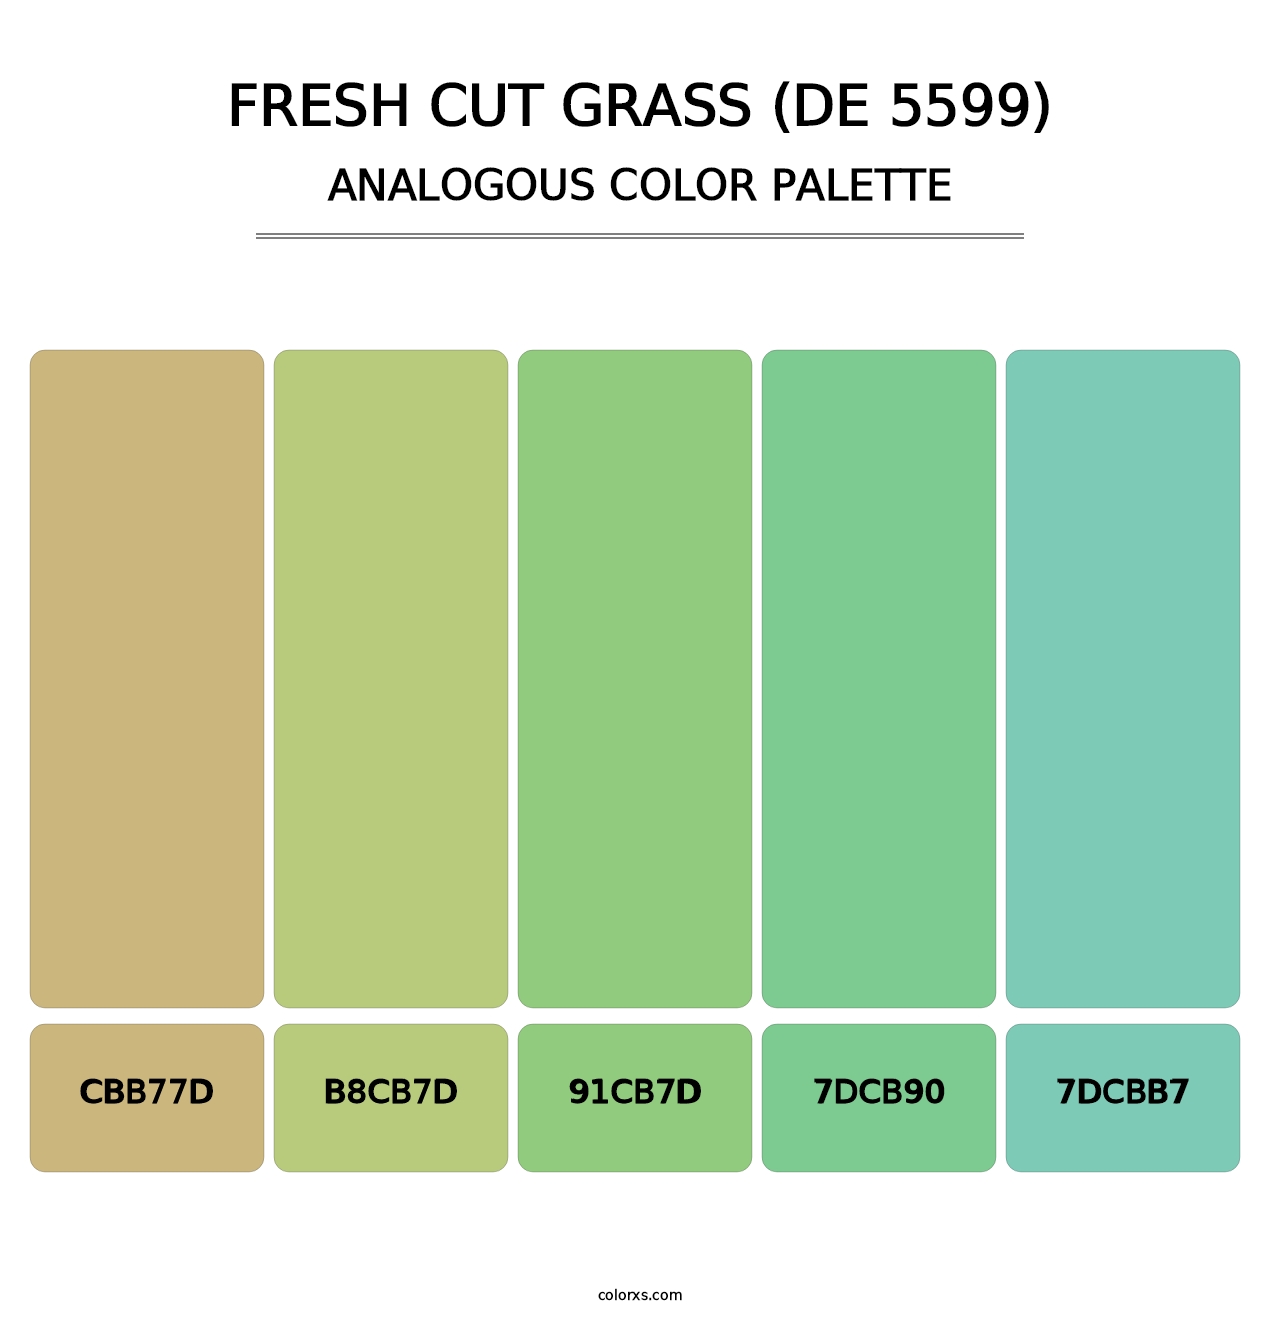 Fresh Cut Grass (DE 5599) - Analogous Color Palette